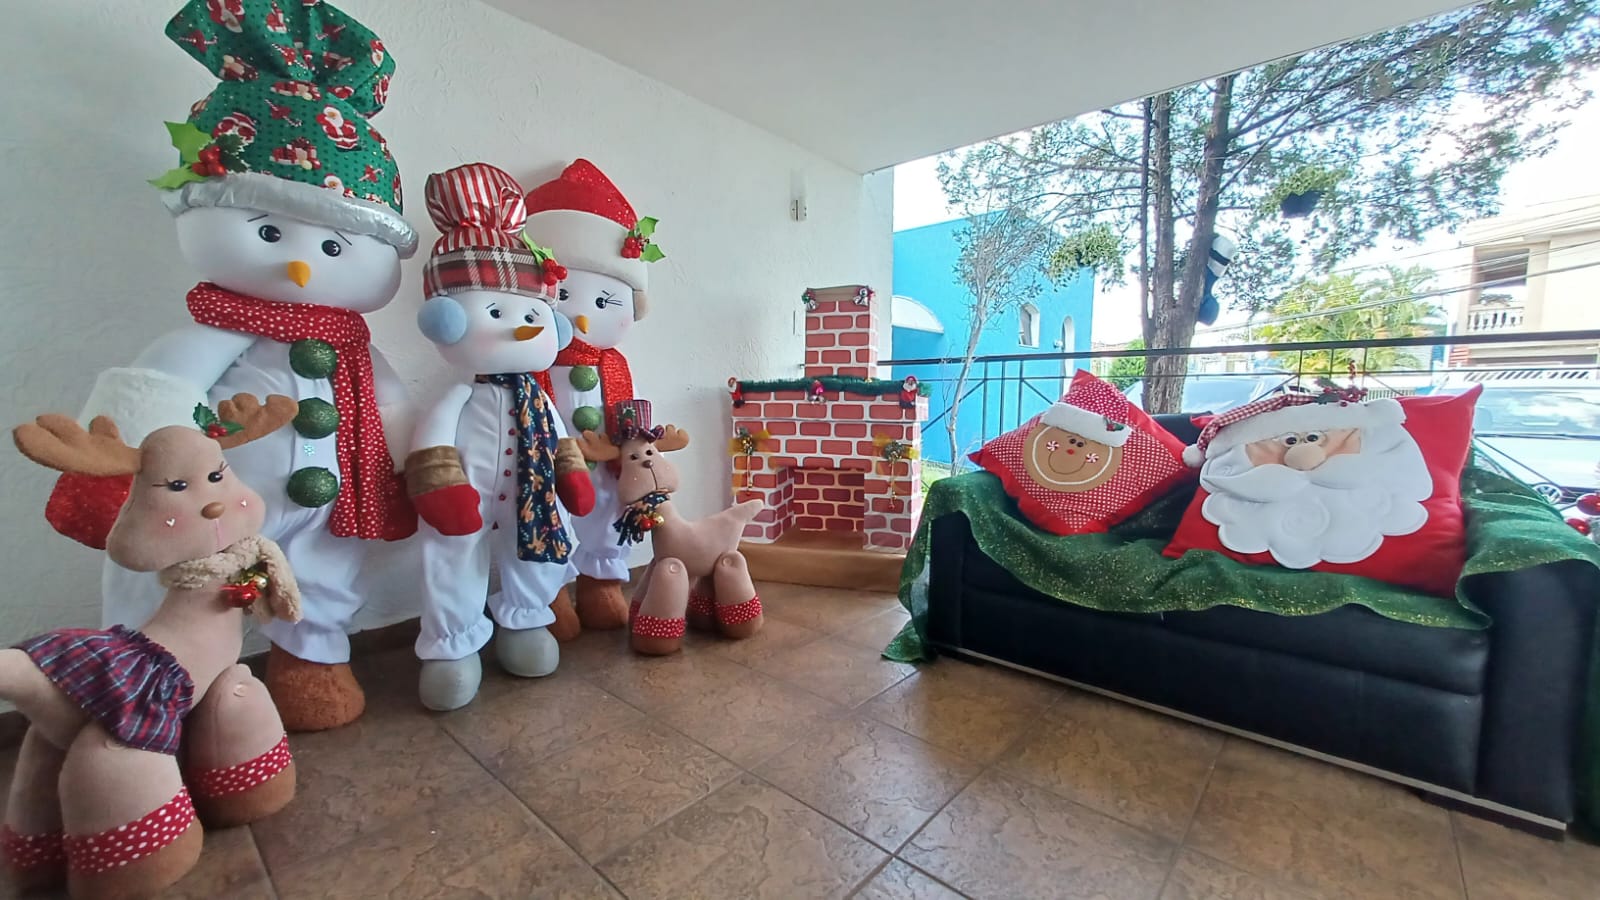 Poá lança Natal Solidário no próximo dia 13 - Prefeitura Municipal de Poá